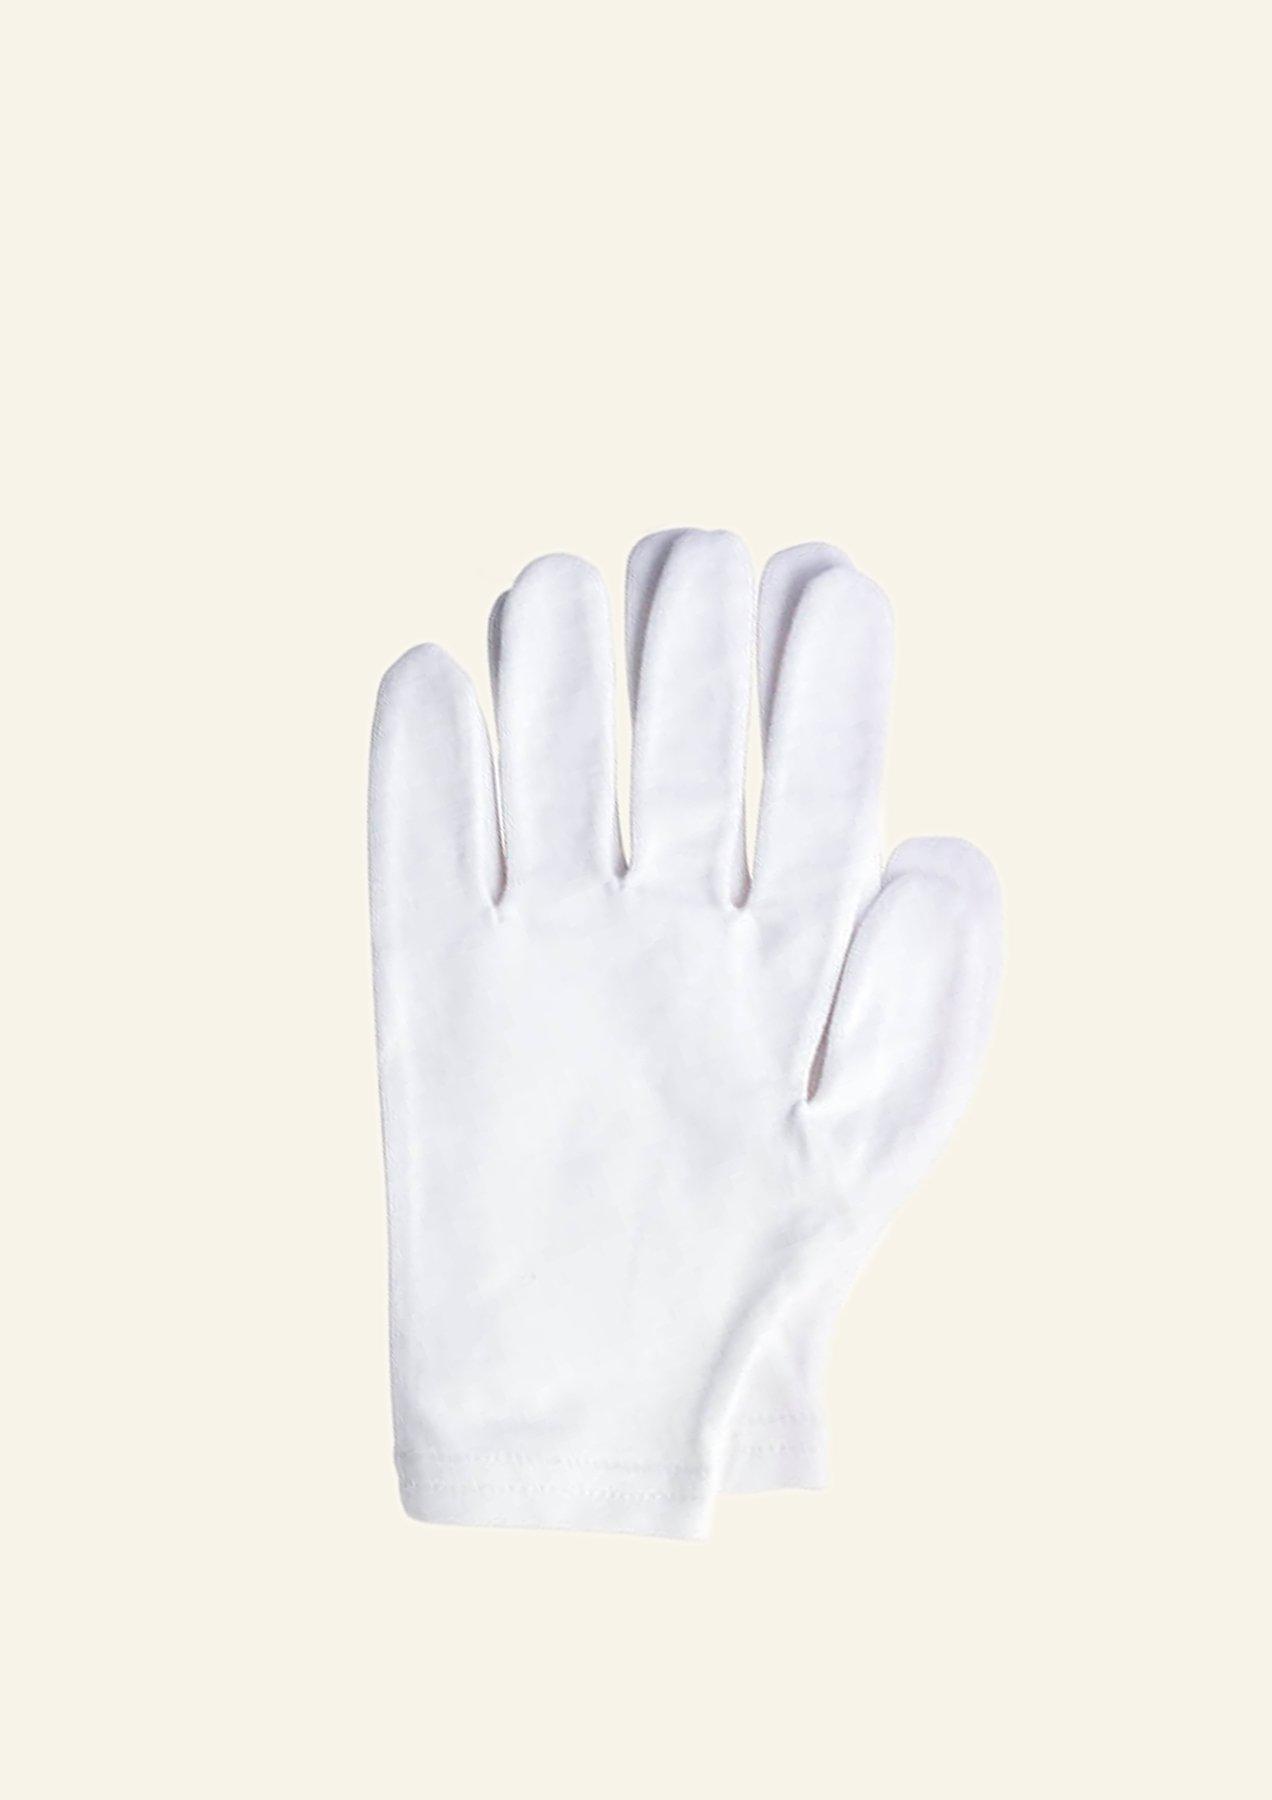 Gant Coton pour soins des mains en complément des crèmes hydratantes.